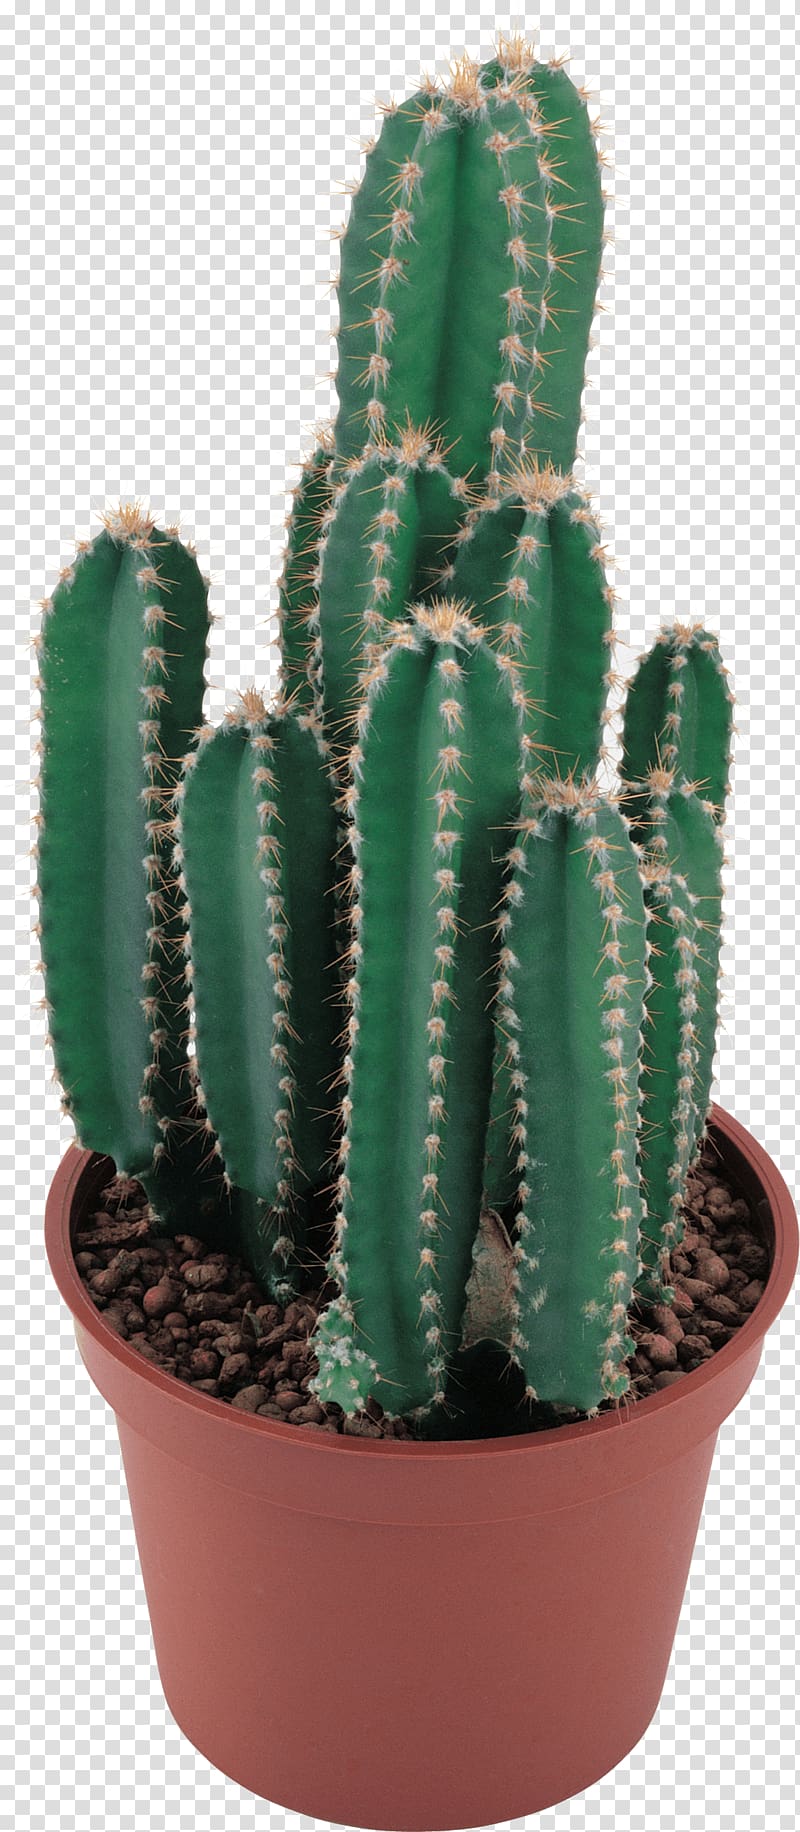 green cactus plant, Cactaceae , Cactus transparent background PNG clipart